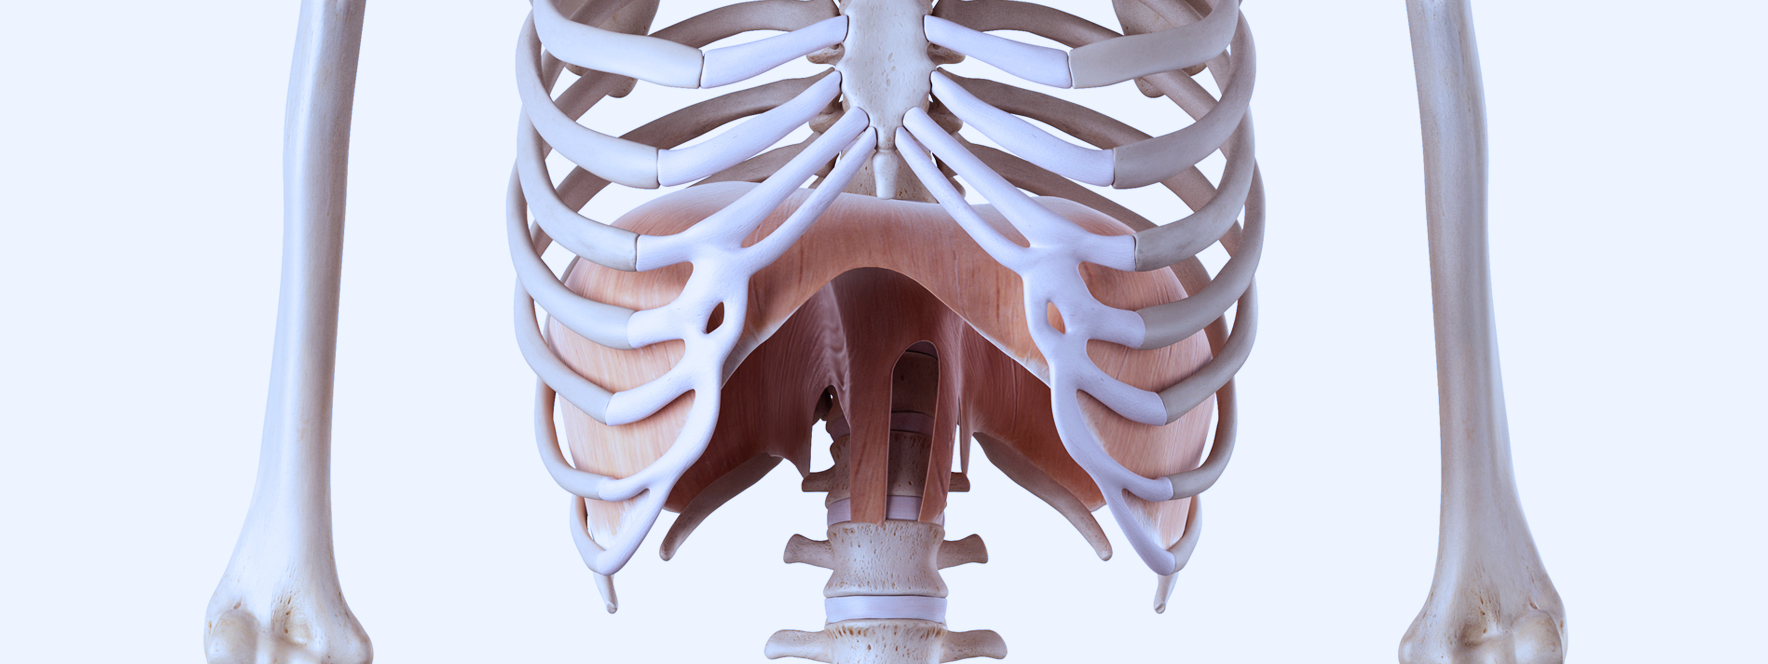 Les effets du diaphragme et du mouvement respiratoire | Le Réseau